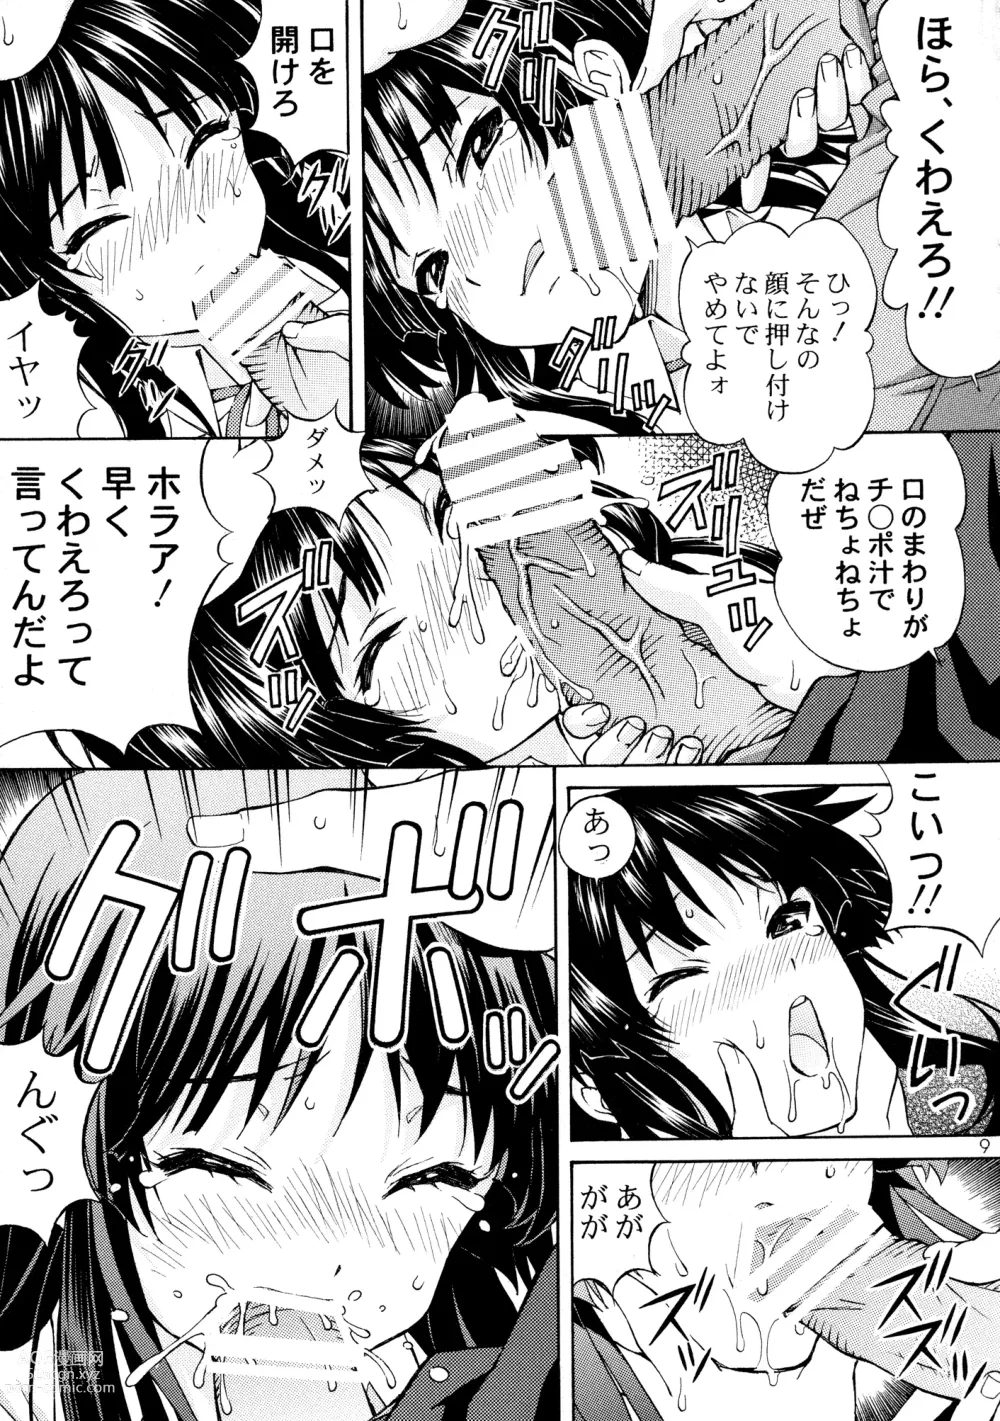 Page 9 of doujinshi Moe-on